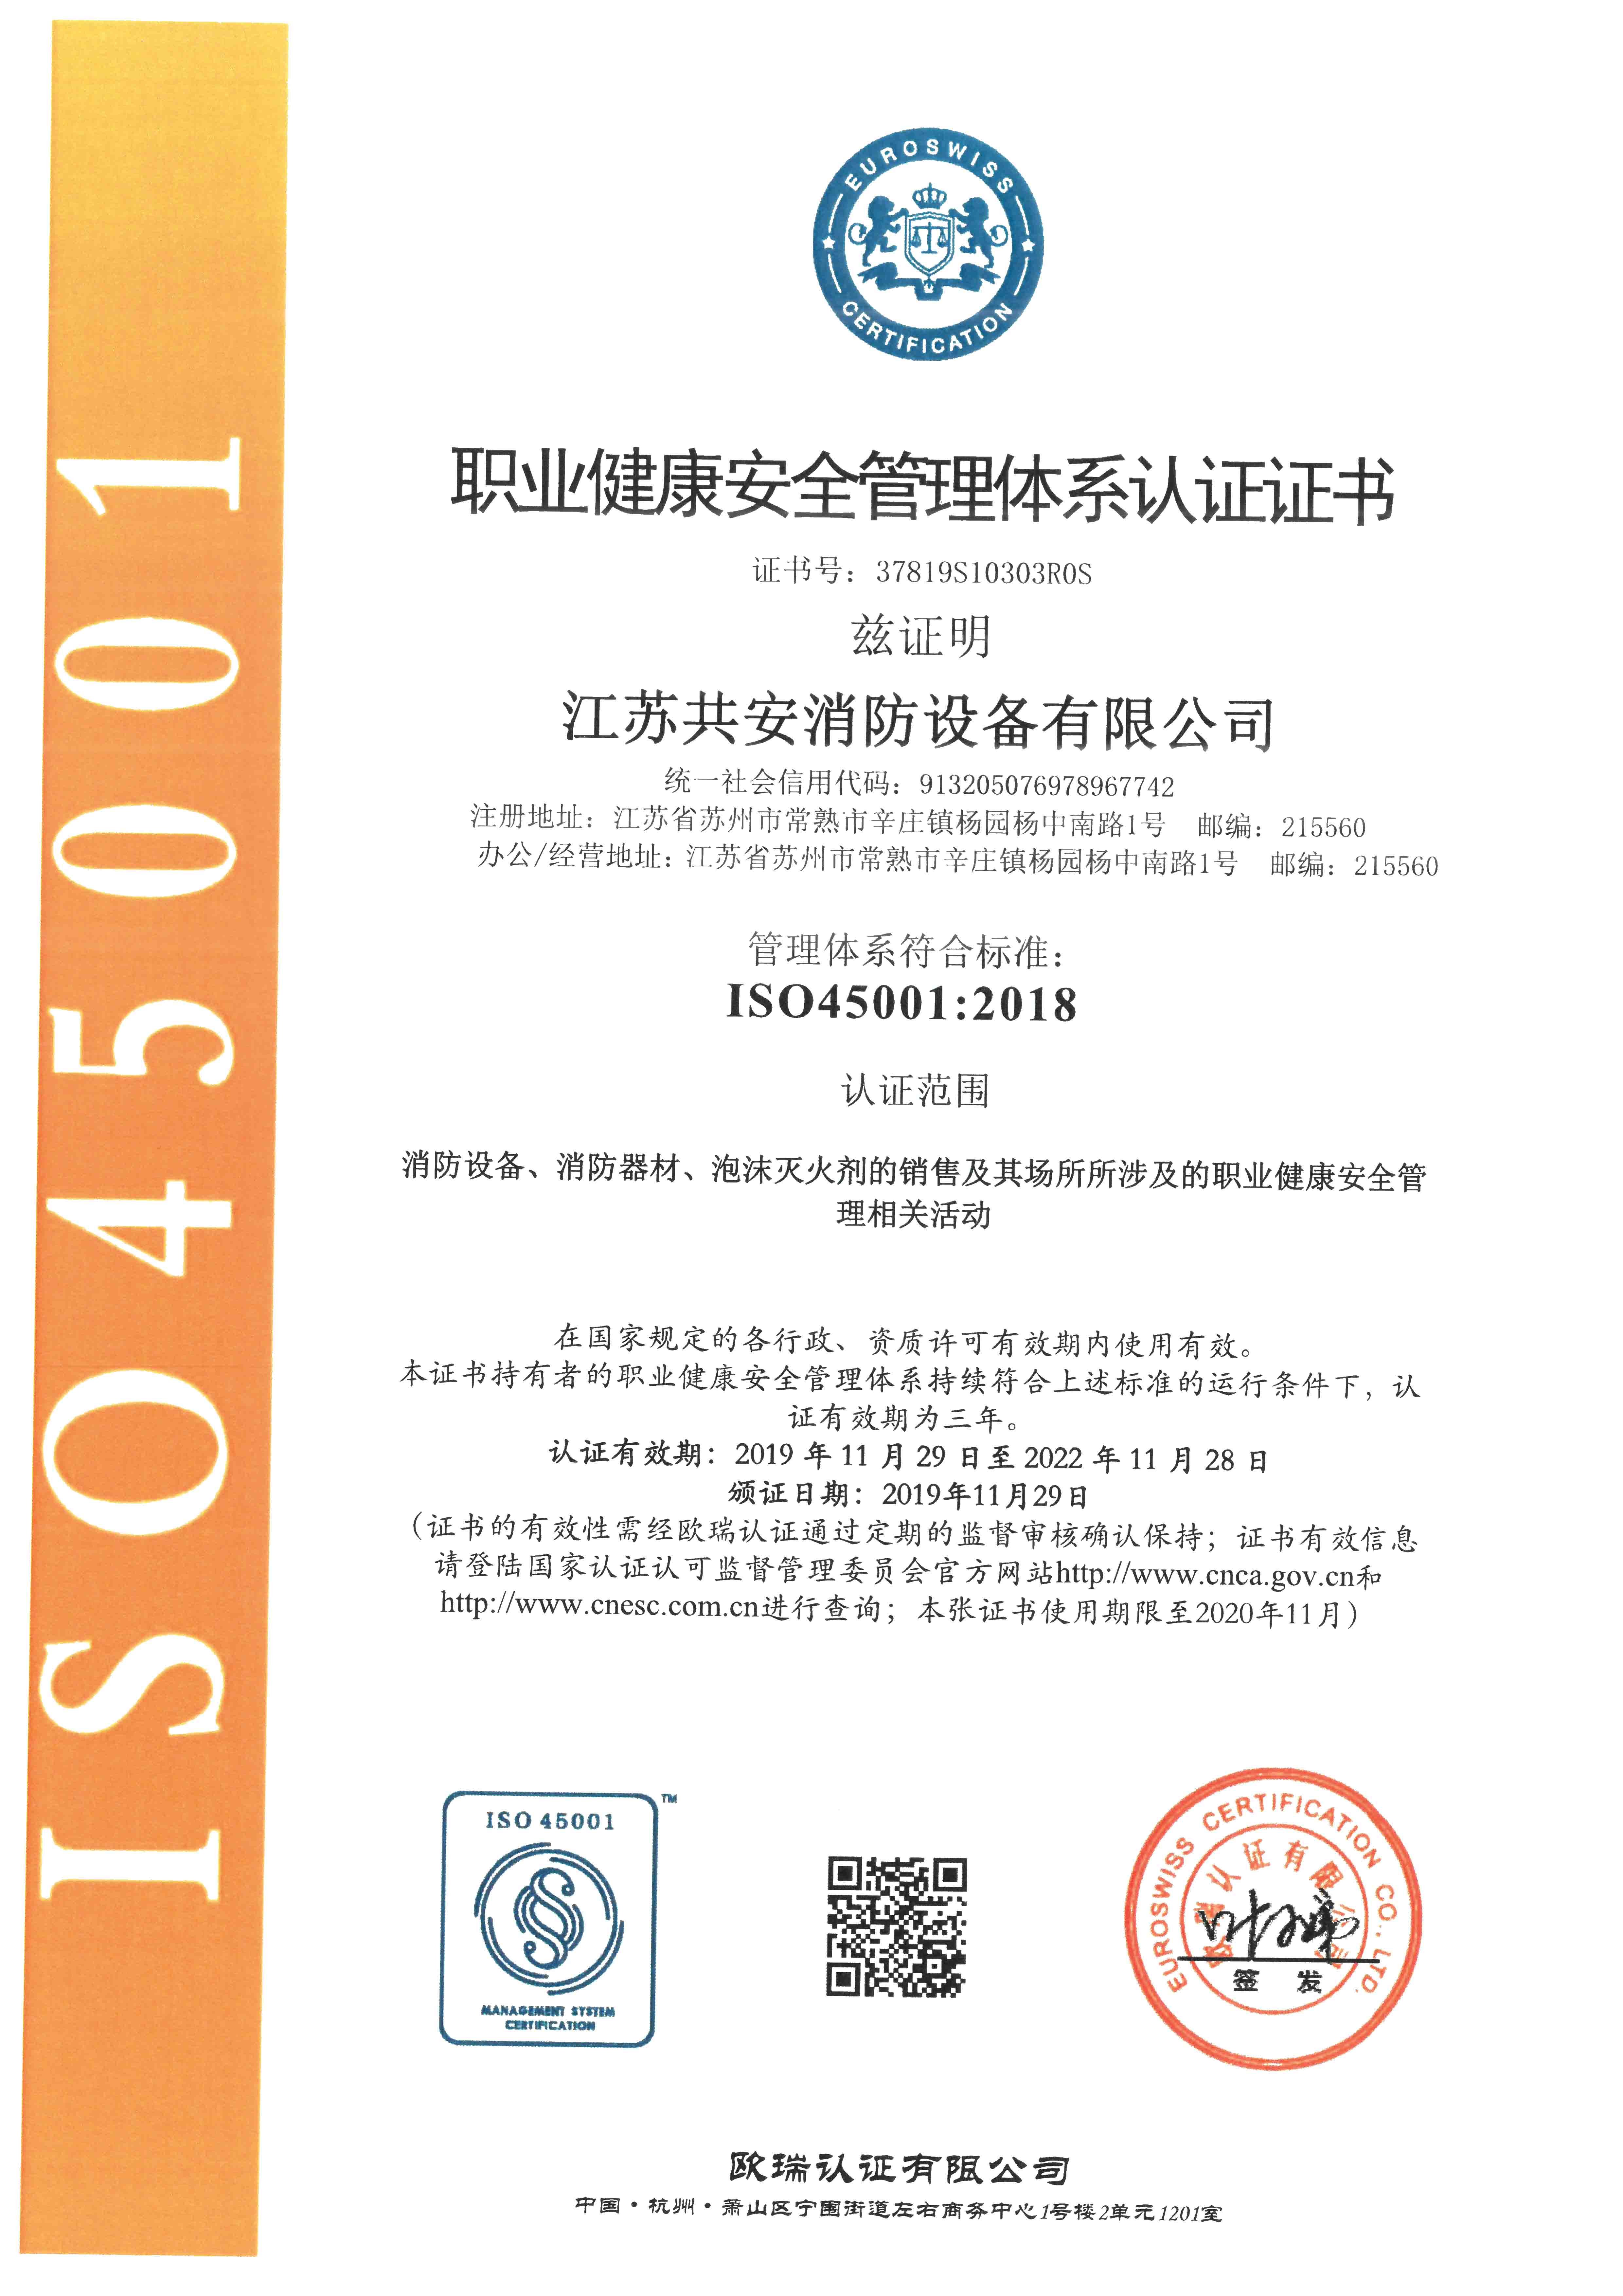 iso45001 职业健康安全管理体系认证证书jpg